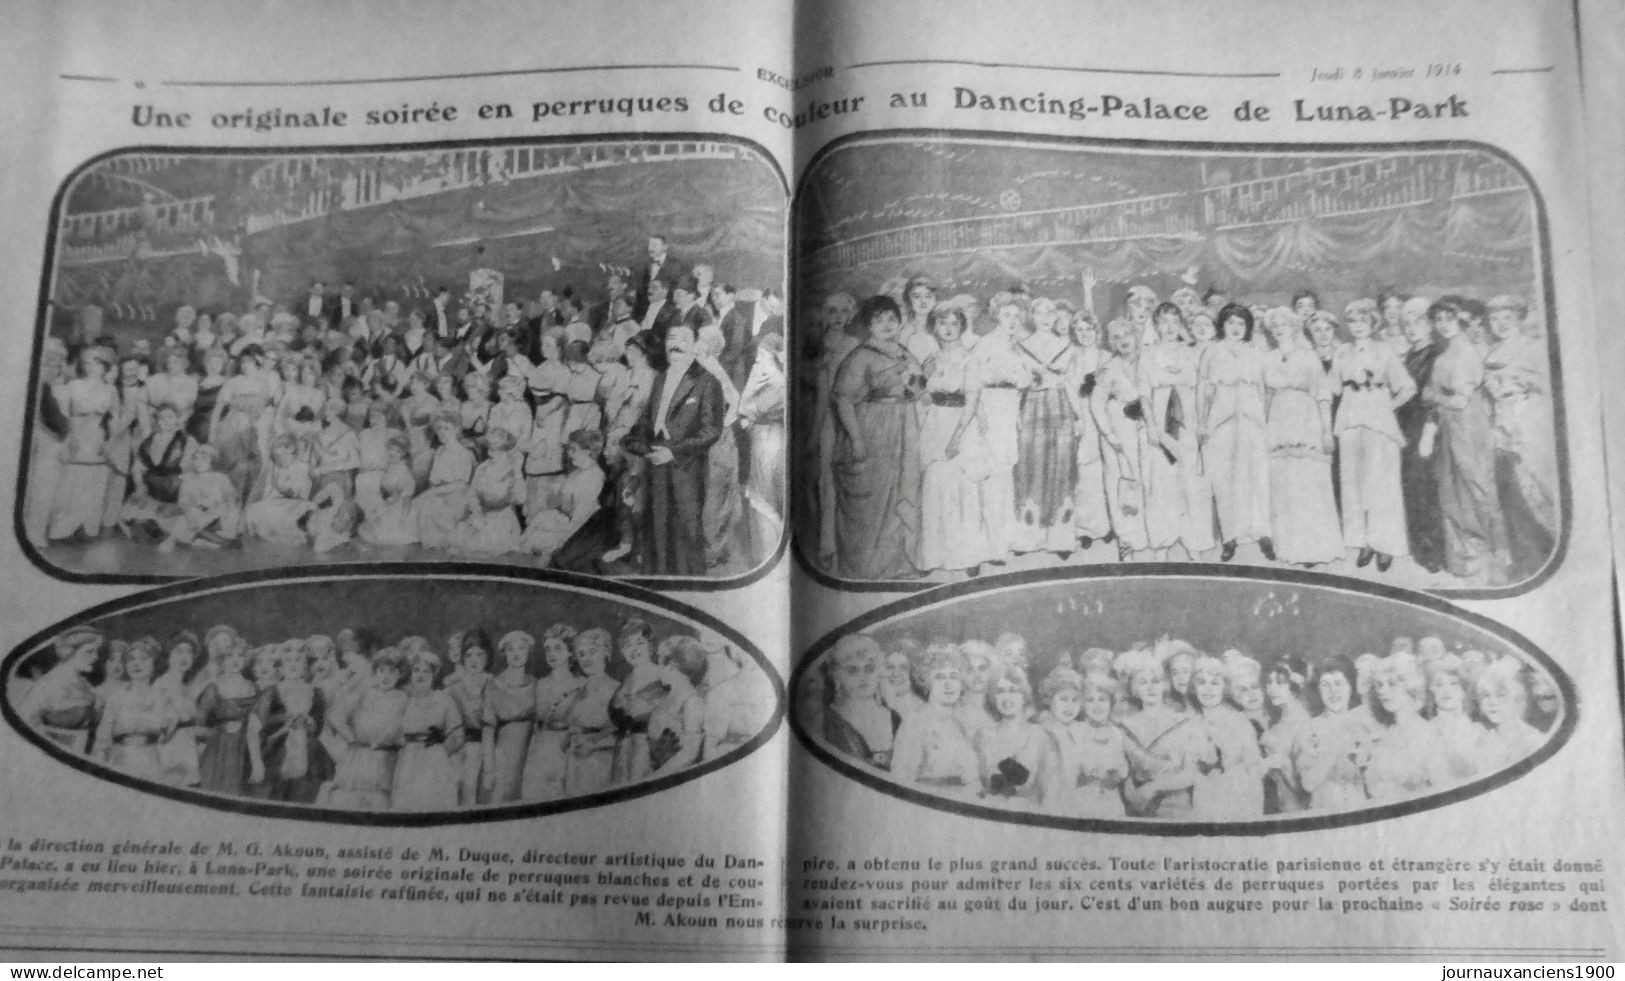 1914 EXCELSIOR ARTICLE DE PRESSE DANCING PALACE AKOUN DUQUE PERRUQUE 1 JOURNAL - Glasdias